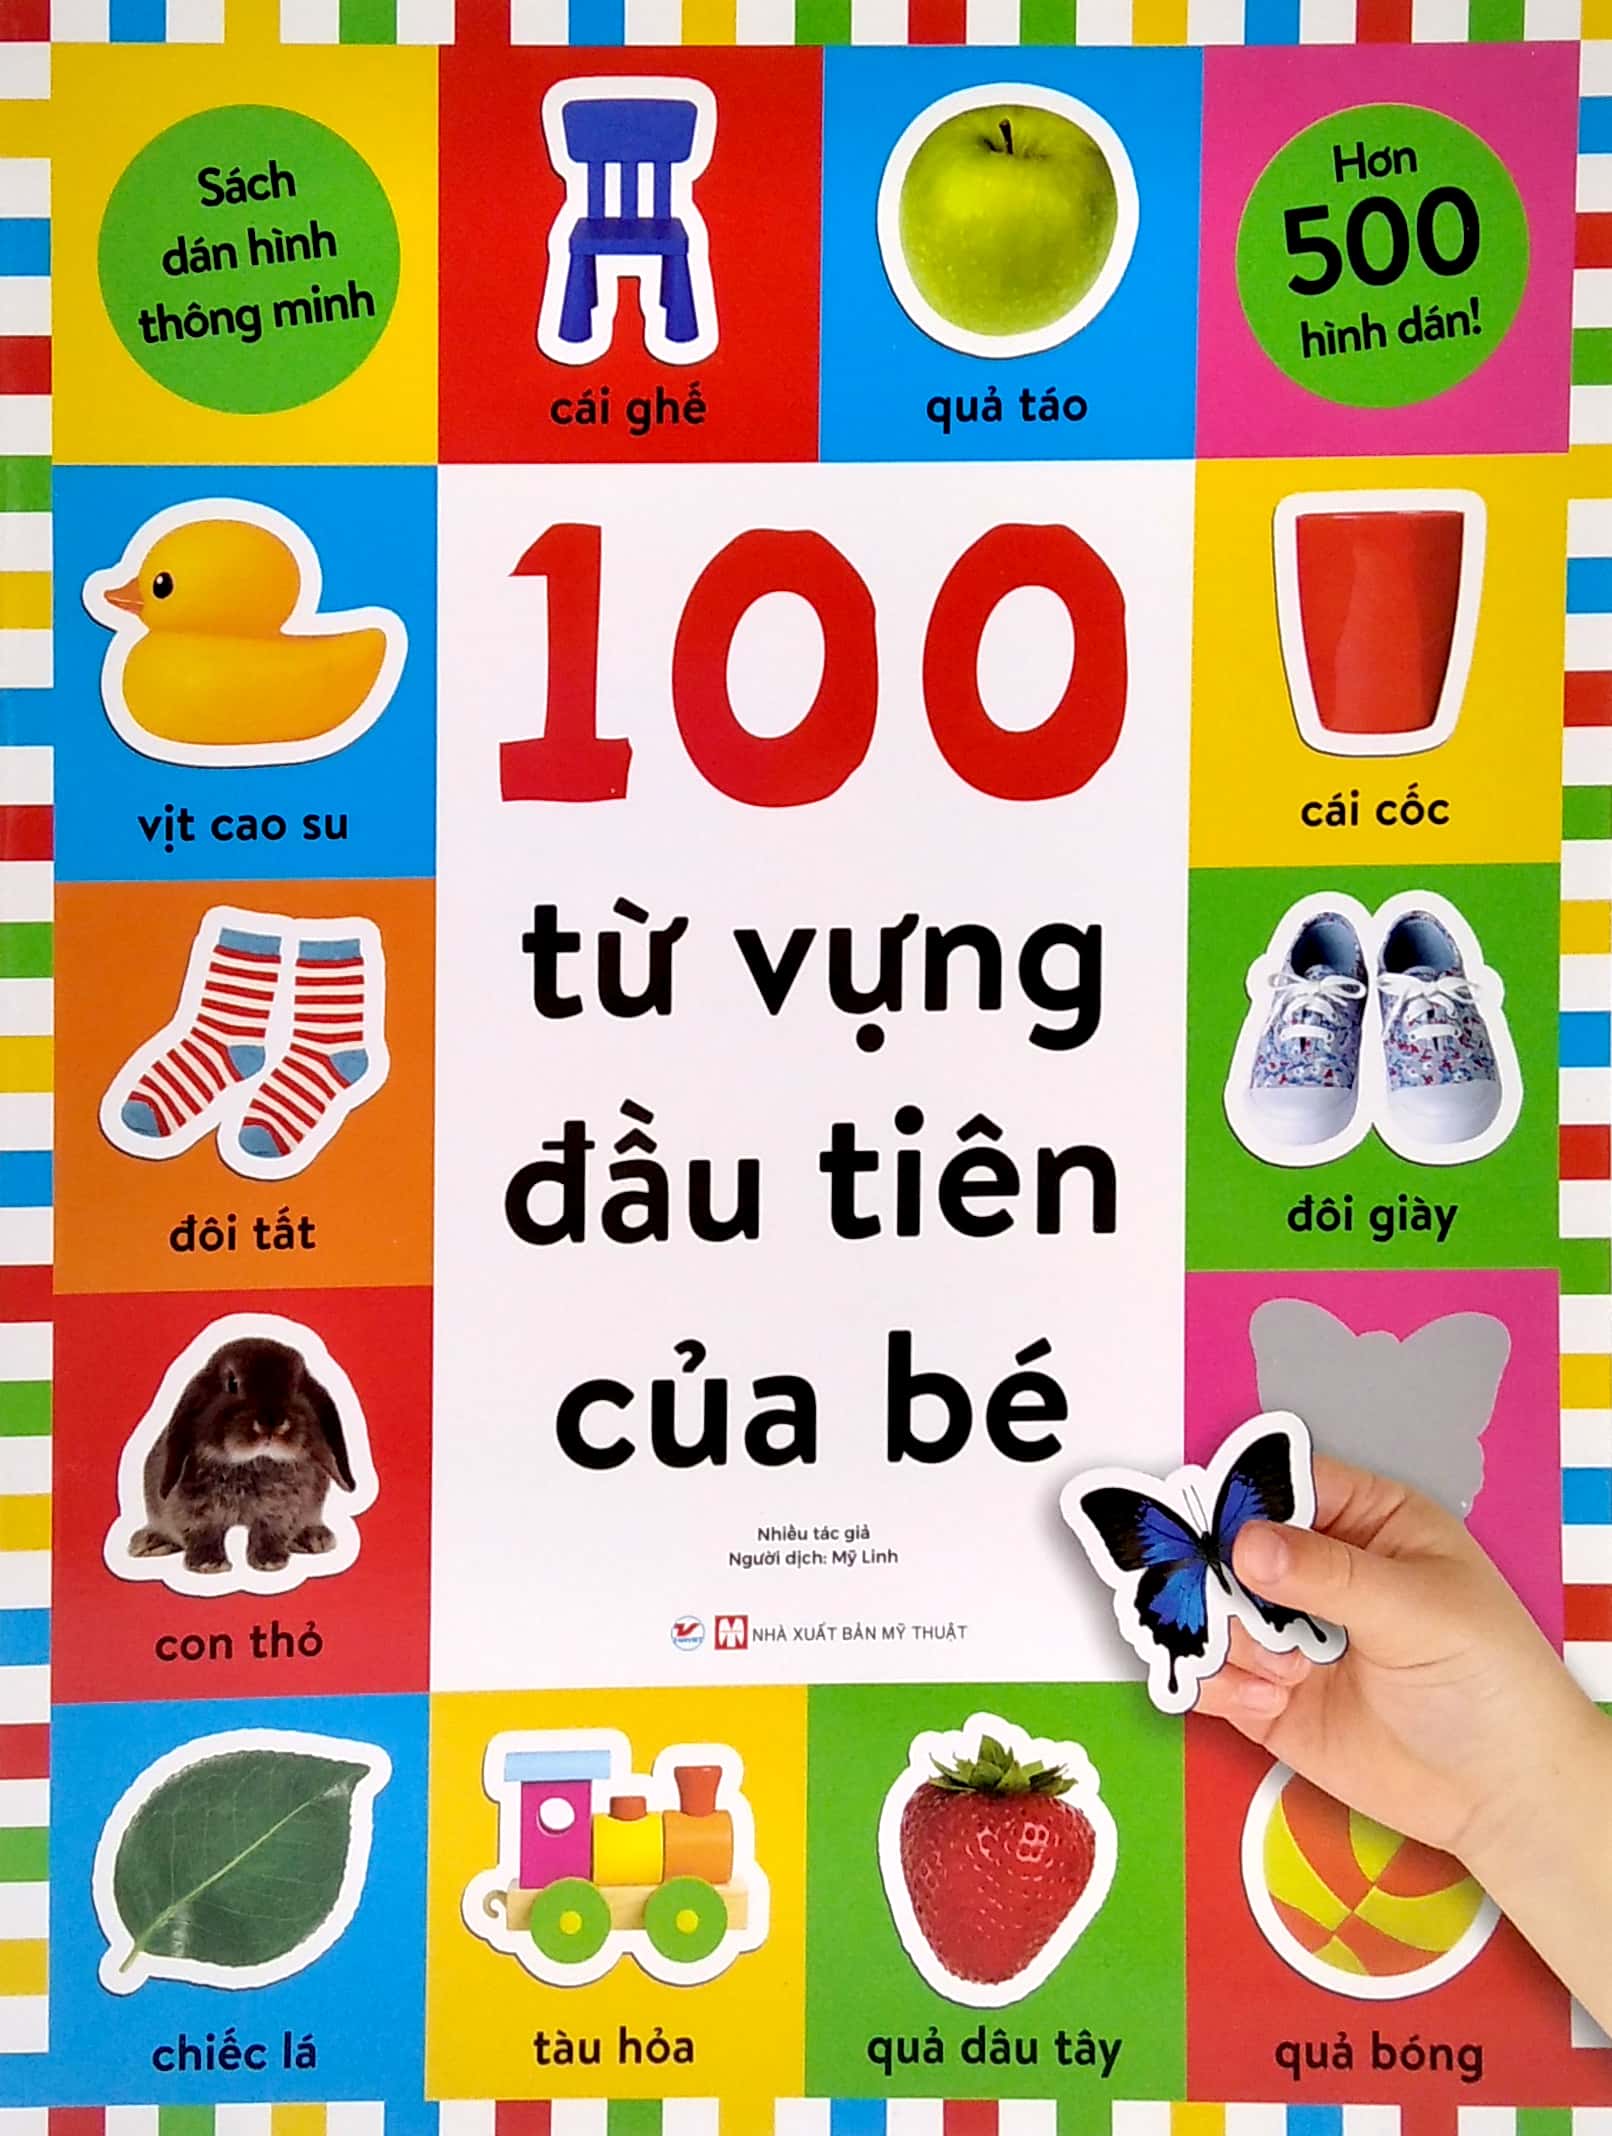 Dán Hình Thông Minh - 100 Từ Vựng Đầu Tiên Của Bé